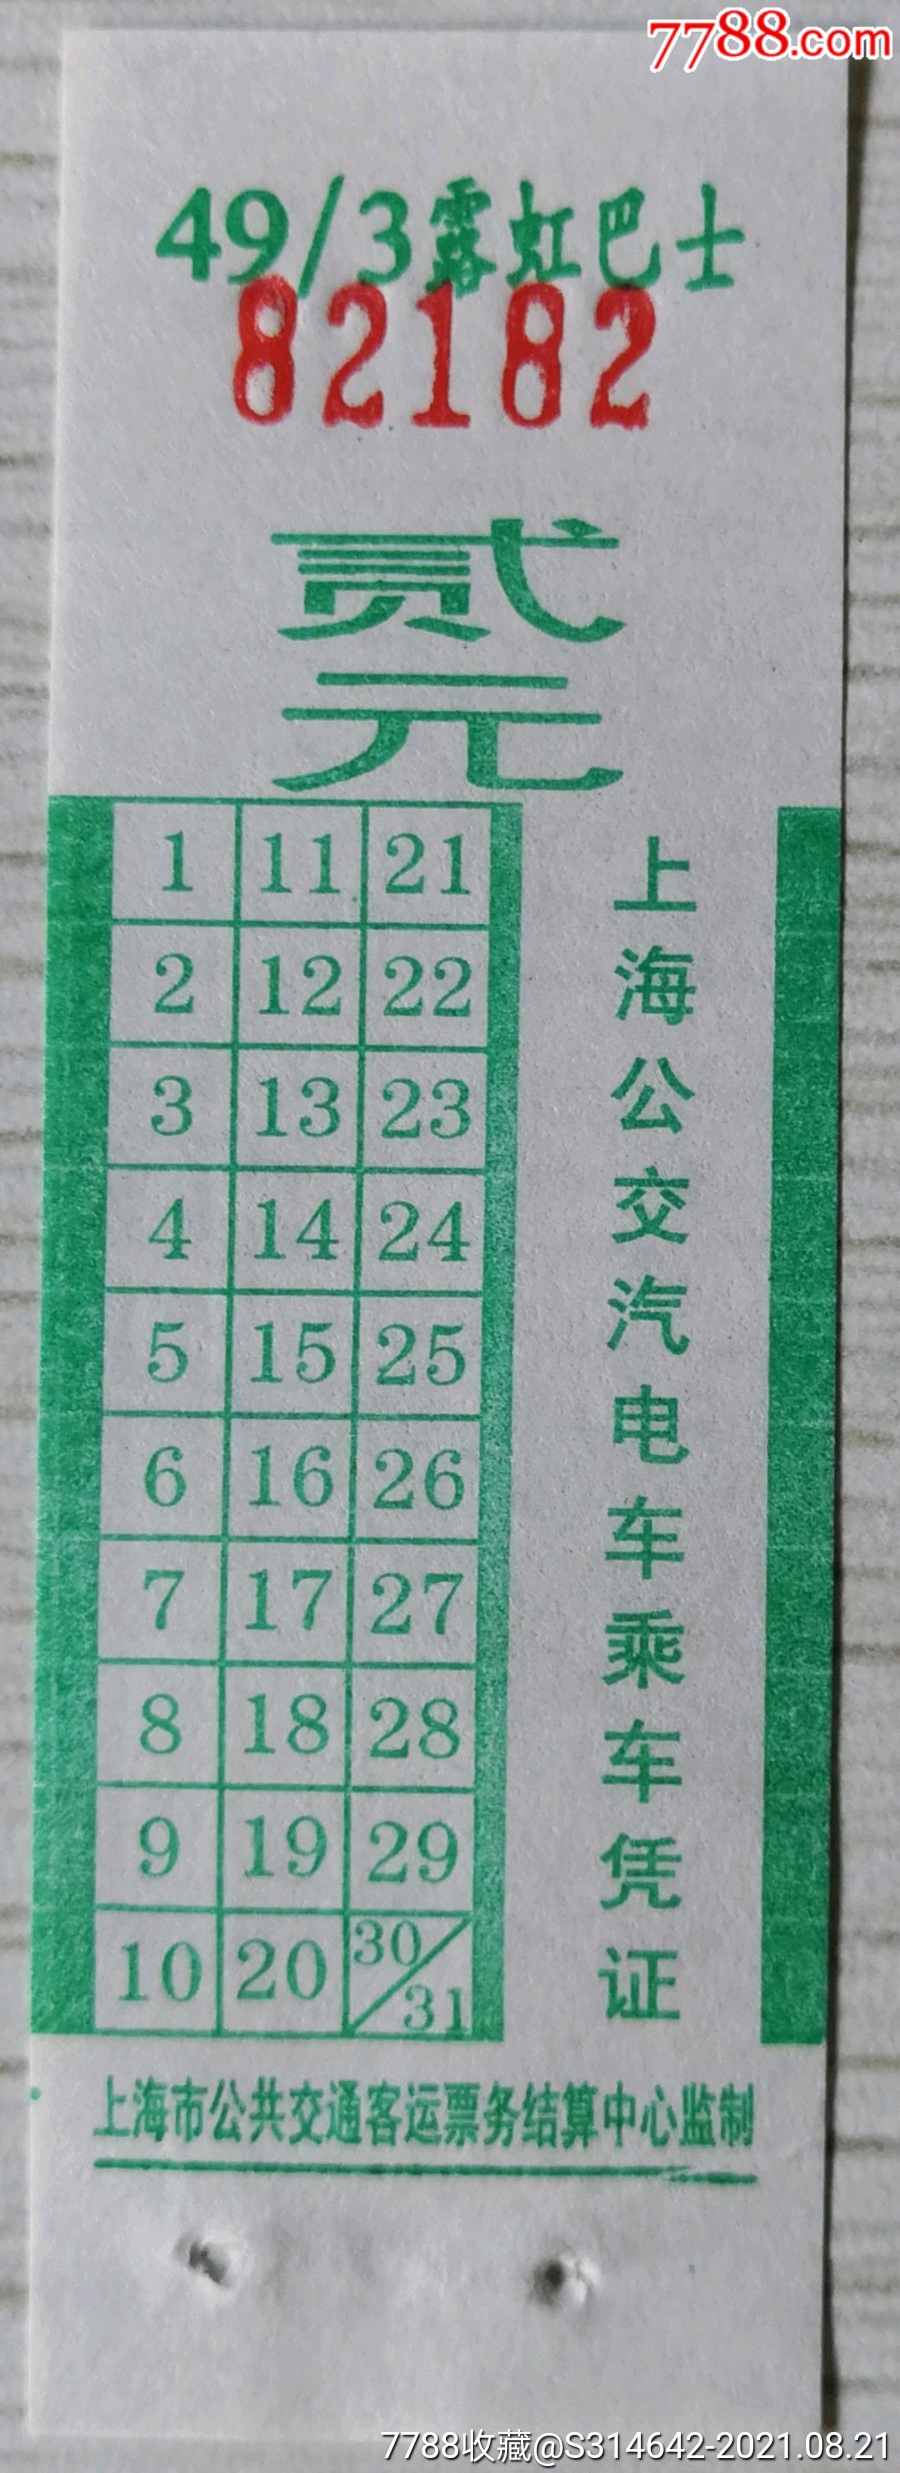 上海公交车票